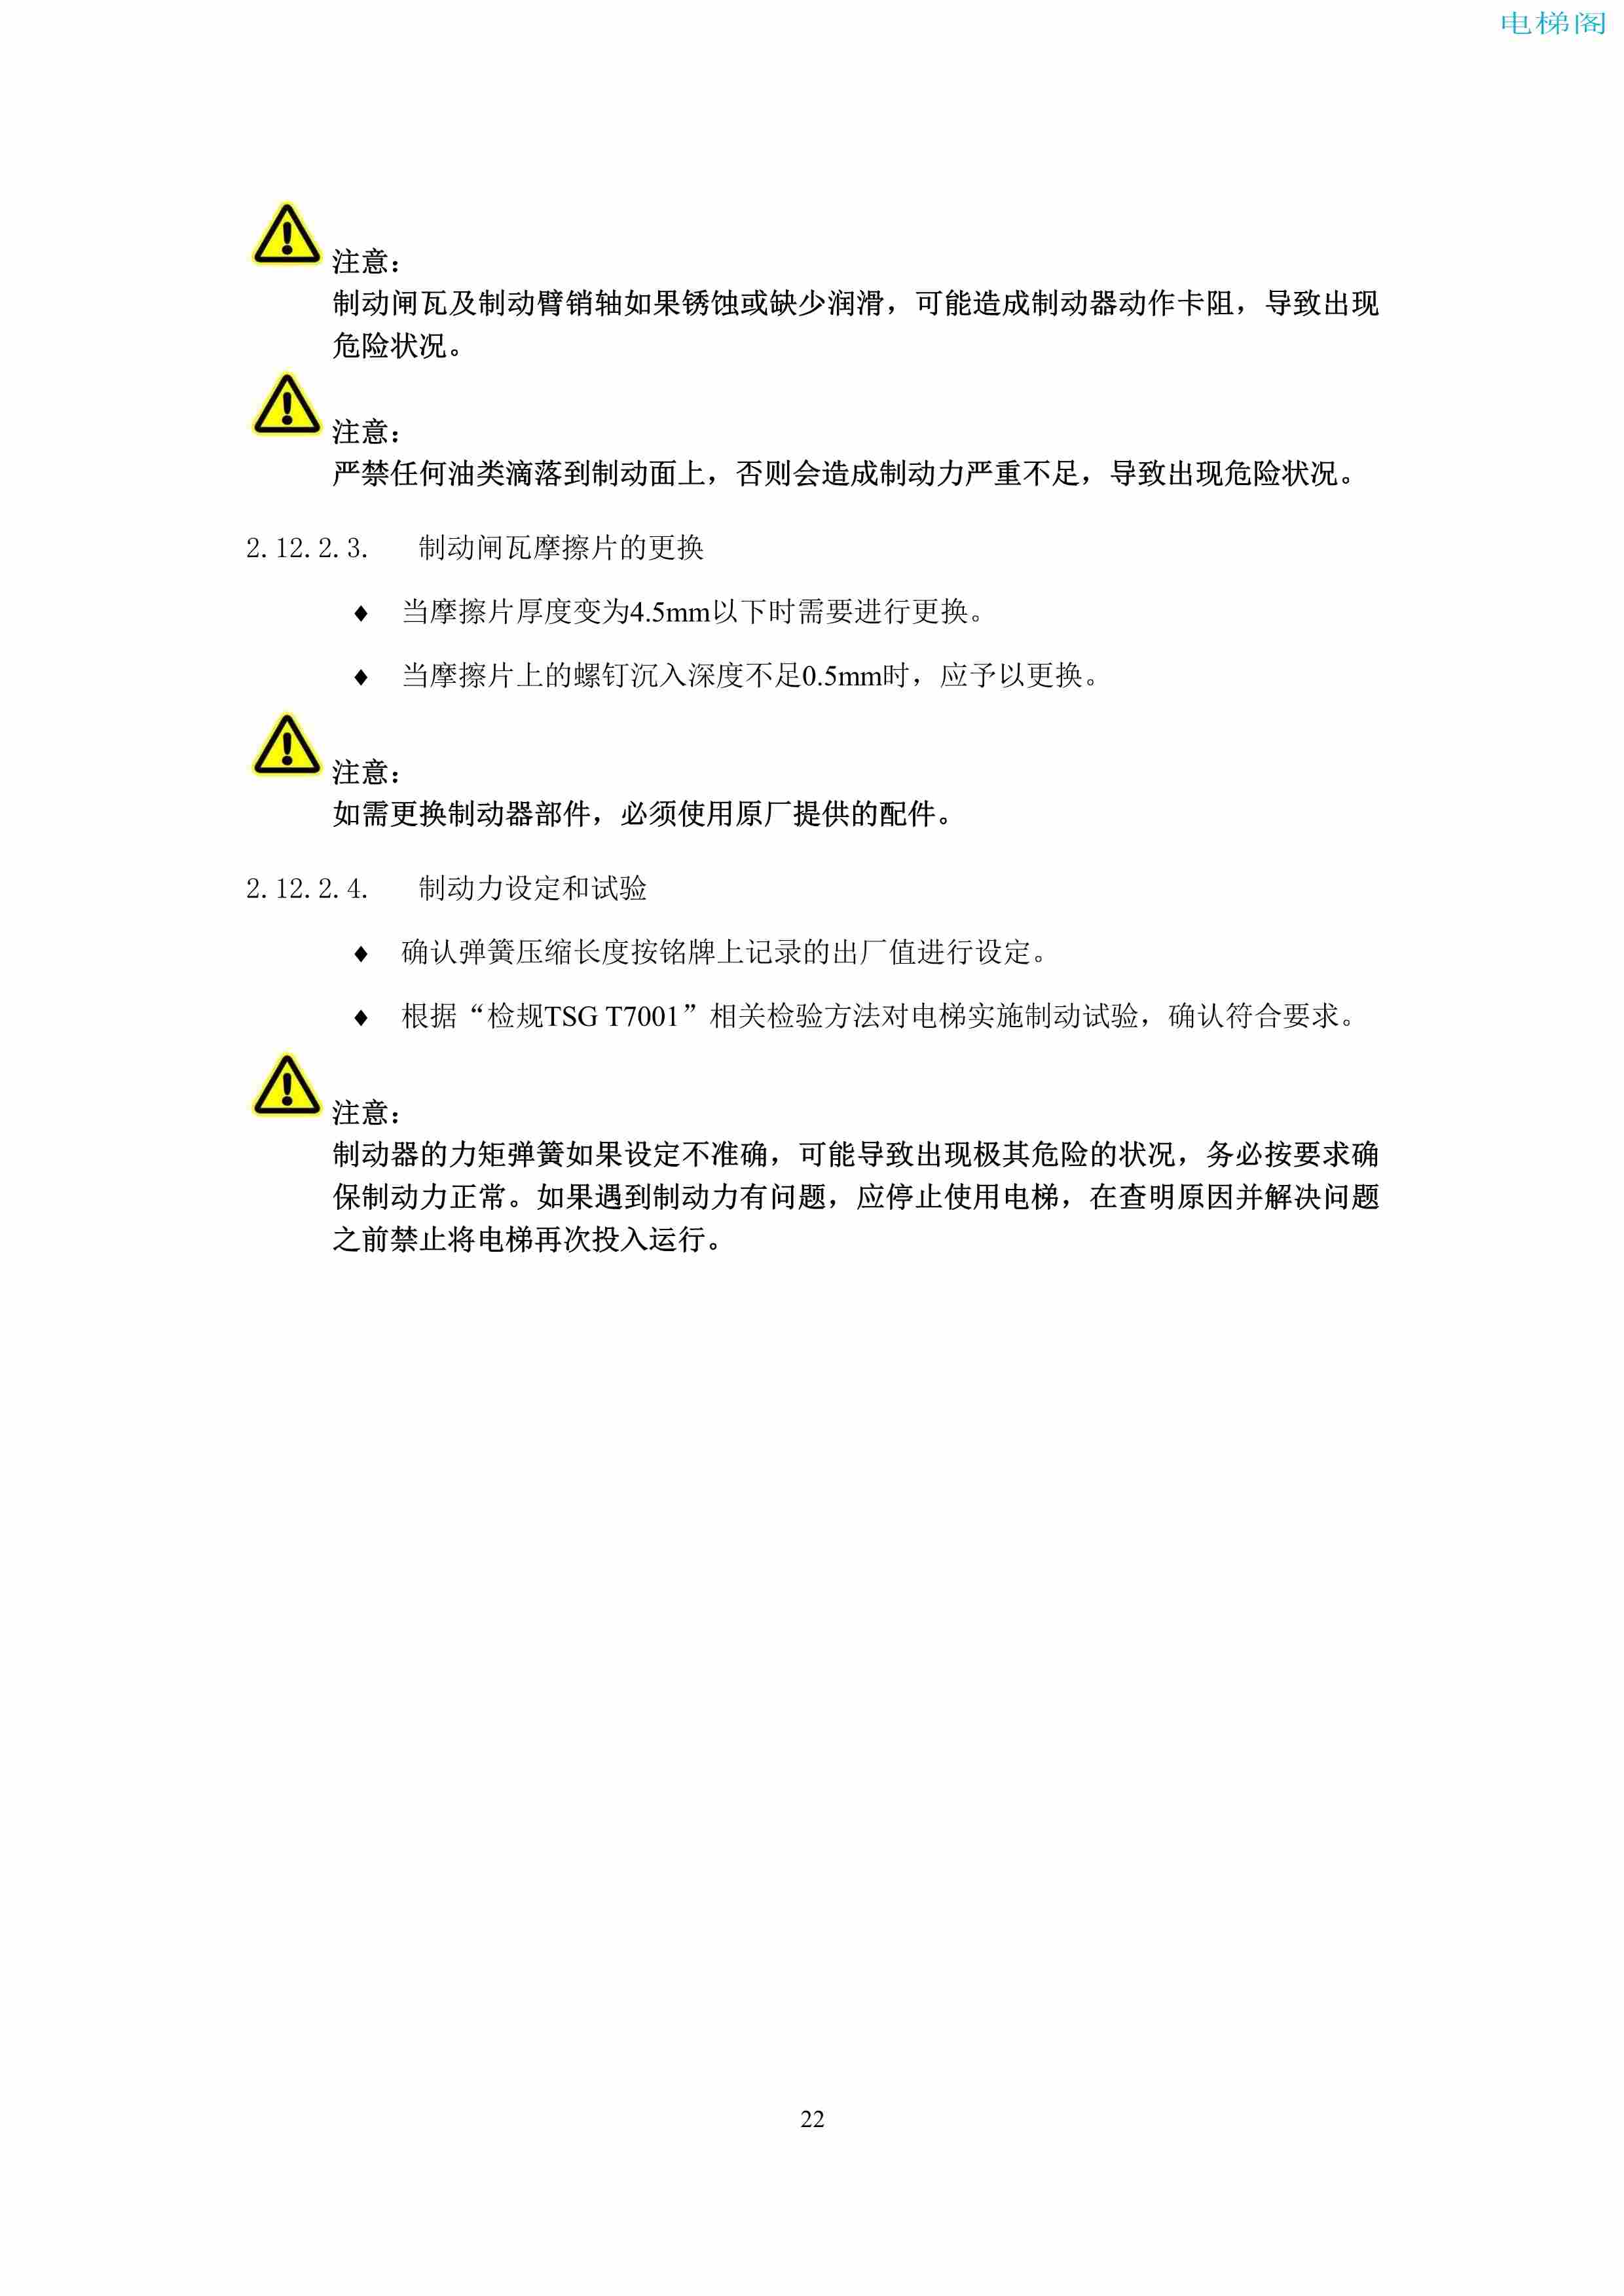 上海三菱电梯有限公司电梯制动器维护作业要领汇编_24.jpg